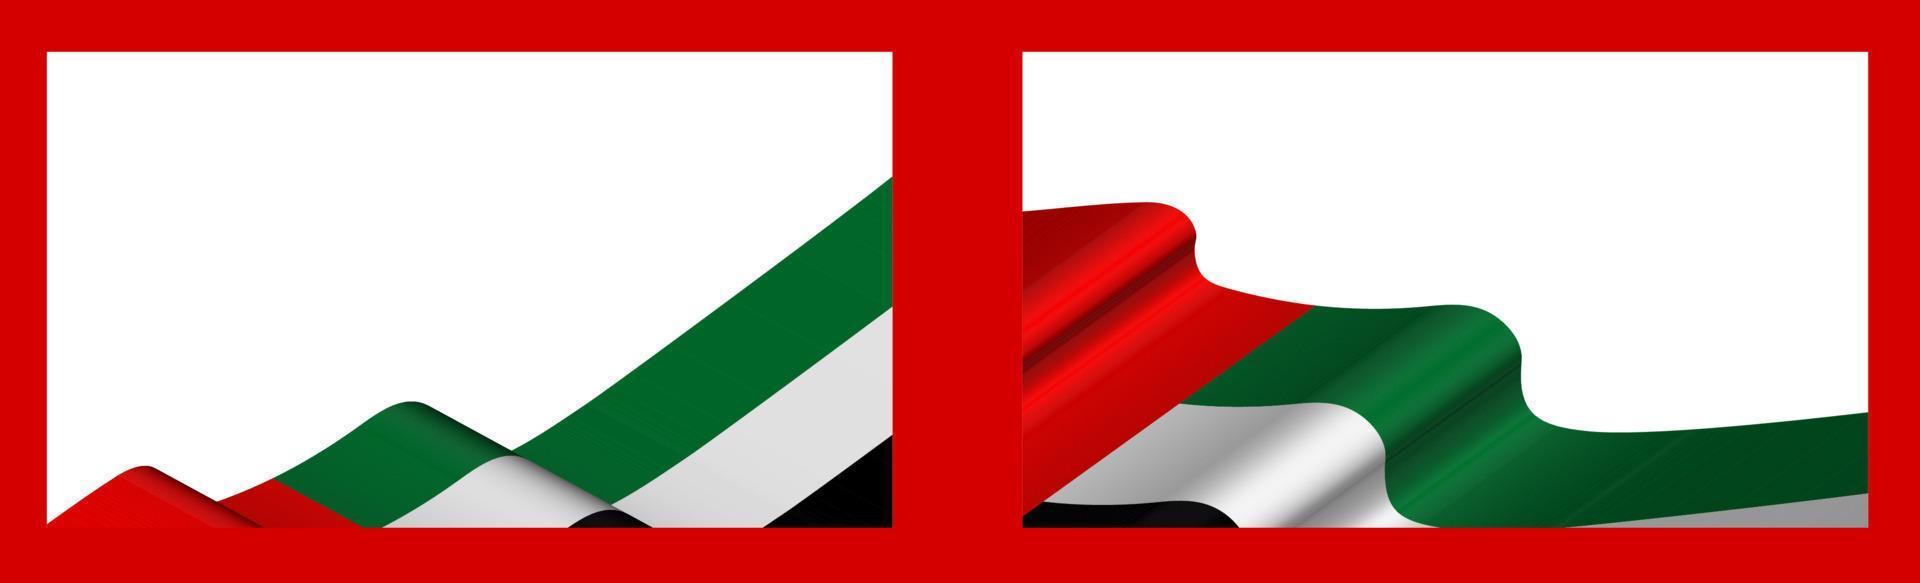 Hintergrund, Vorlage für festliches Design. Die Flagge der arabischen Emirate flattert im Wind. realistischer Vektor auf weißem Hintergrund